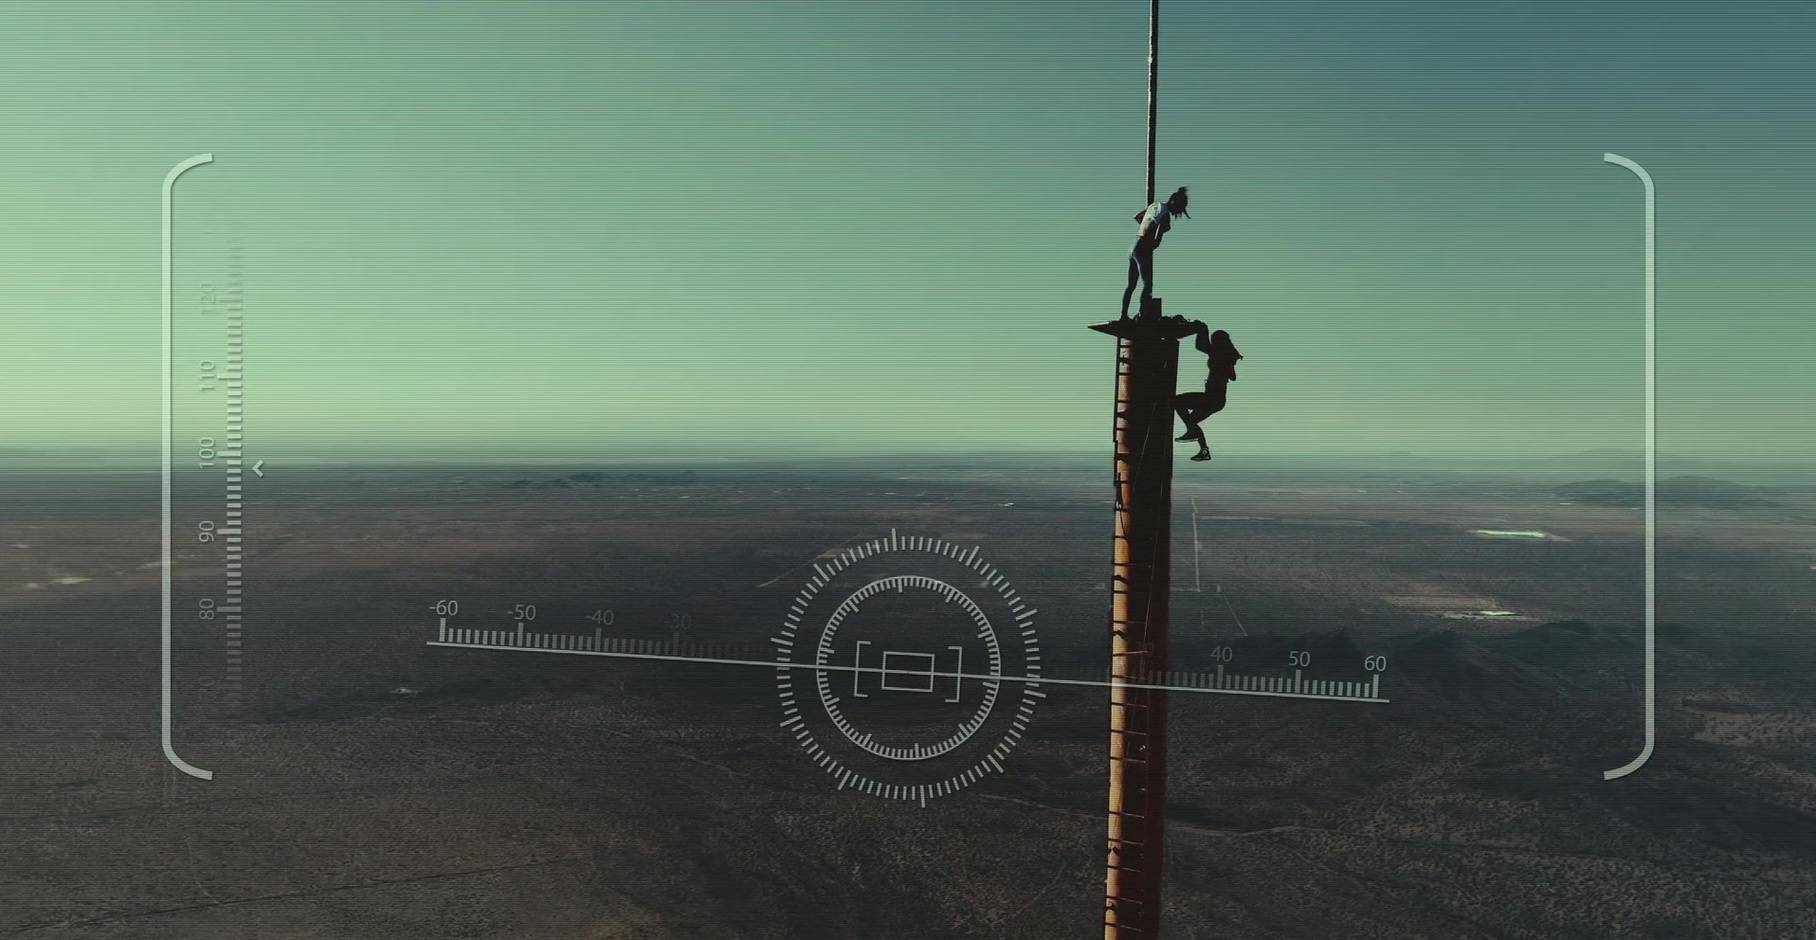 挑战《坠落》中那种又细又高的电视塔，是什么感受？